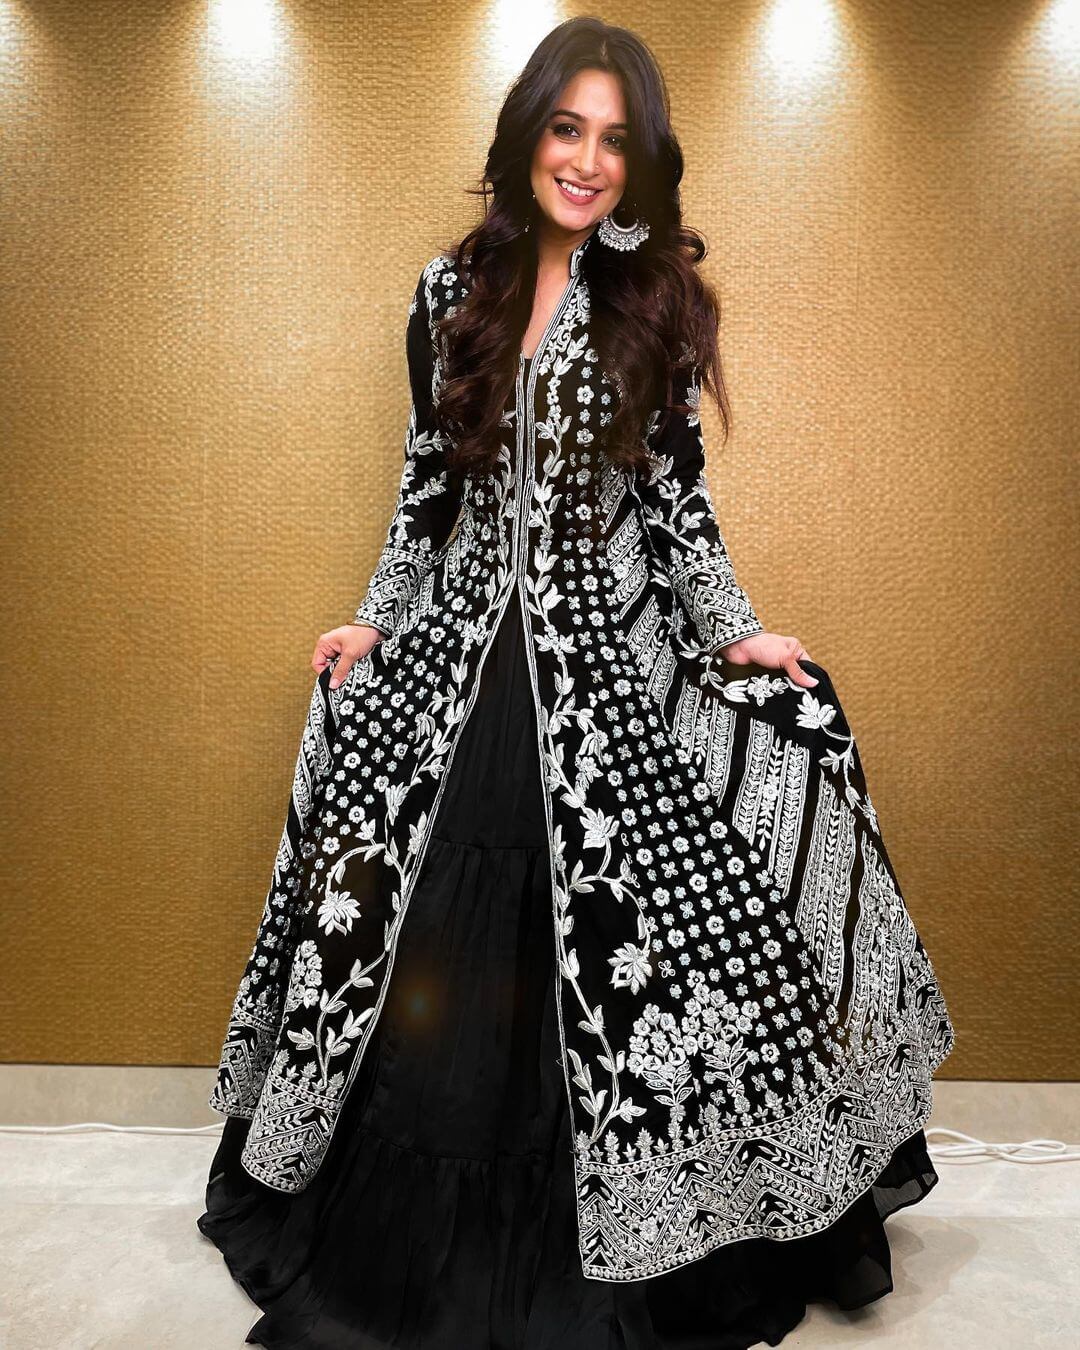 Sasural Simar Ka Fame Dipika Kakar Award Night Look In Black Embellished Gown